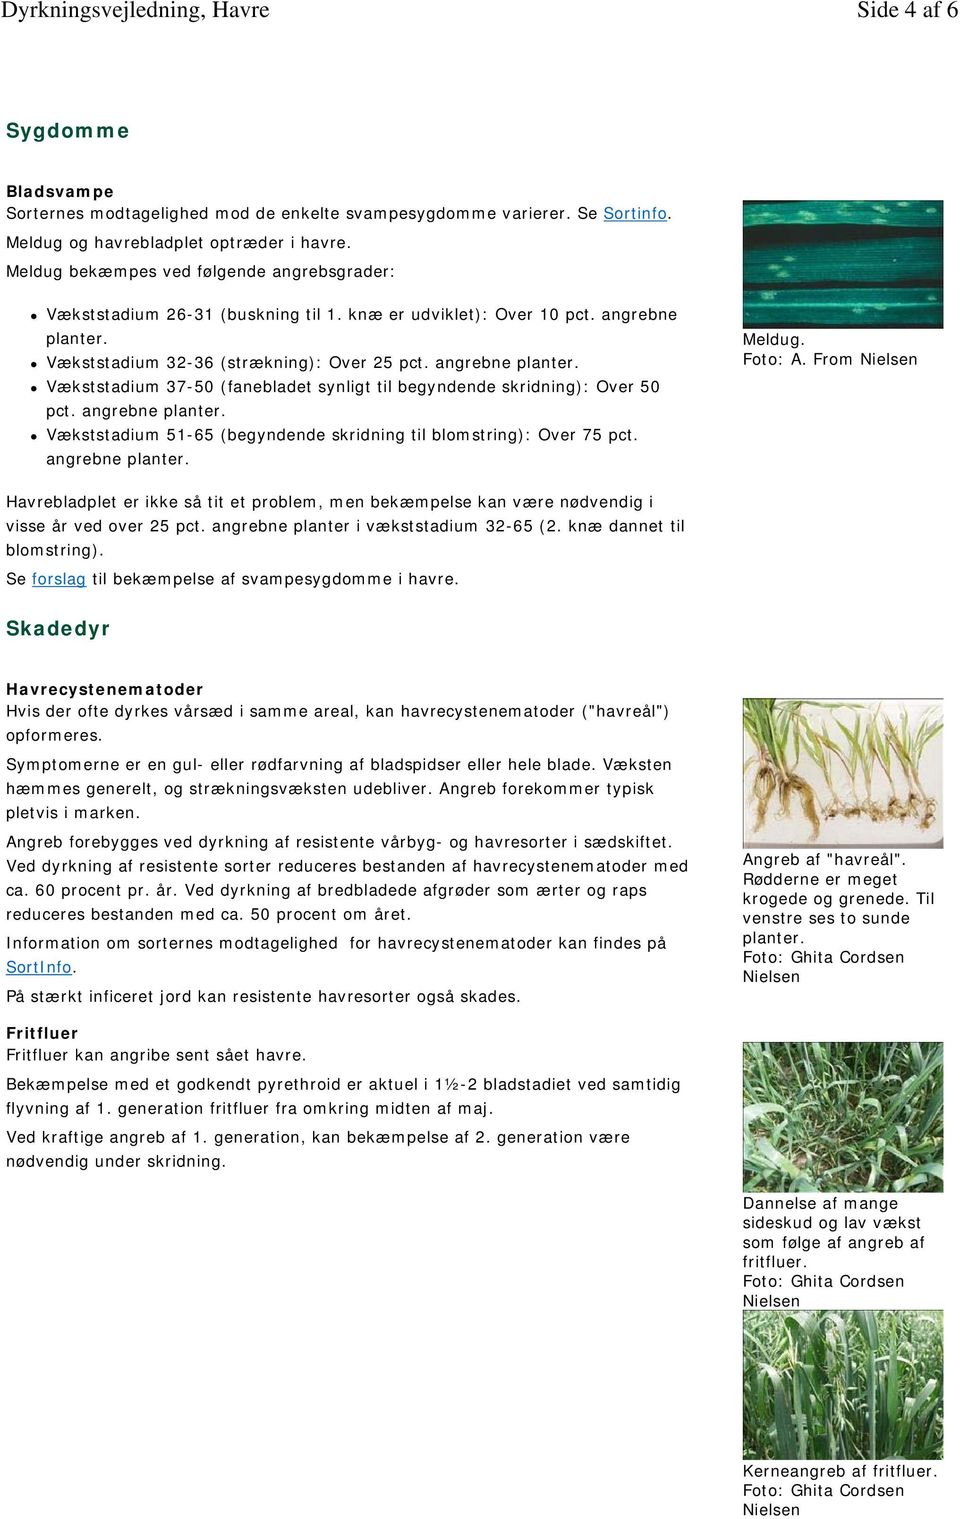 Vækststadium 32-36 (strækning): Over 25 pct. angrebne planter. Vækststadium 37-50 (fanebladet synligt til begyndende skridning): Over 50 pct. angrebne planter. Vækststadium 51-65 (begyndende skridning til blomstring): Over 75 pct.